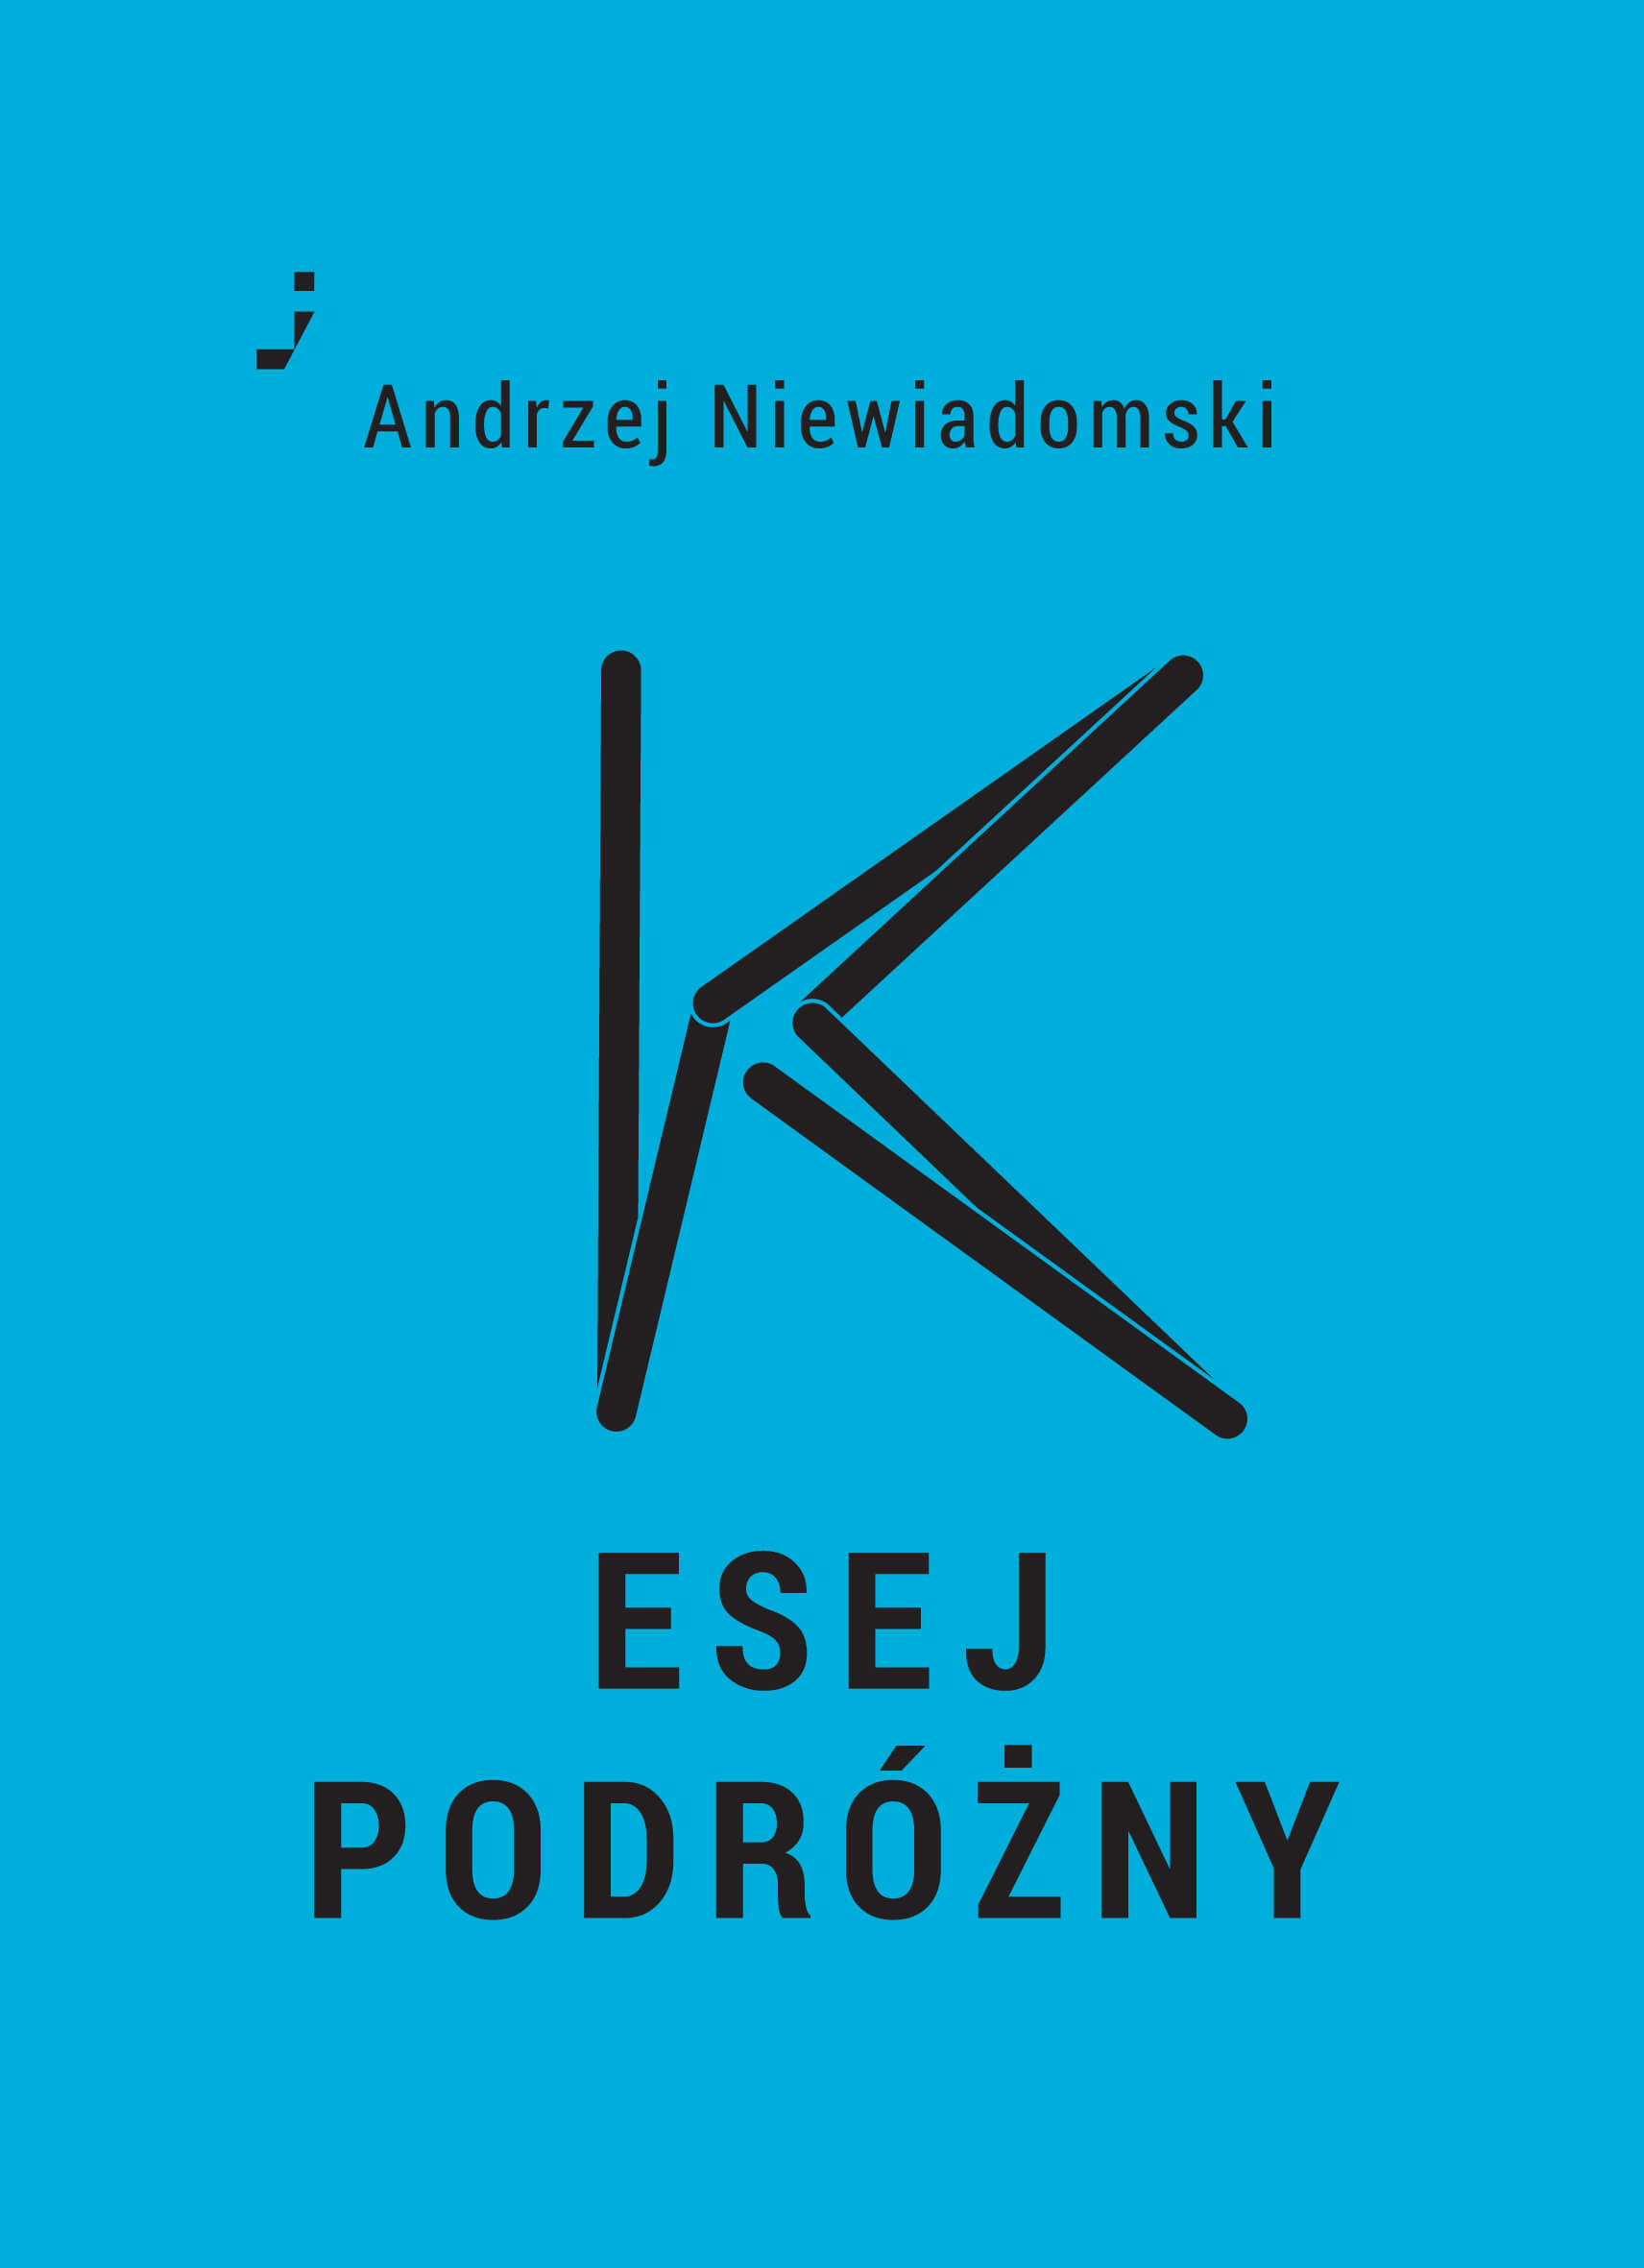 Andrzej Niewiadomski K Esej podróżny